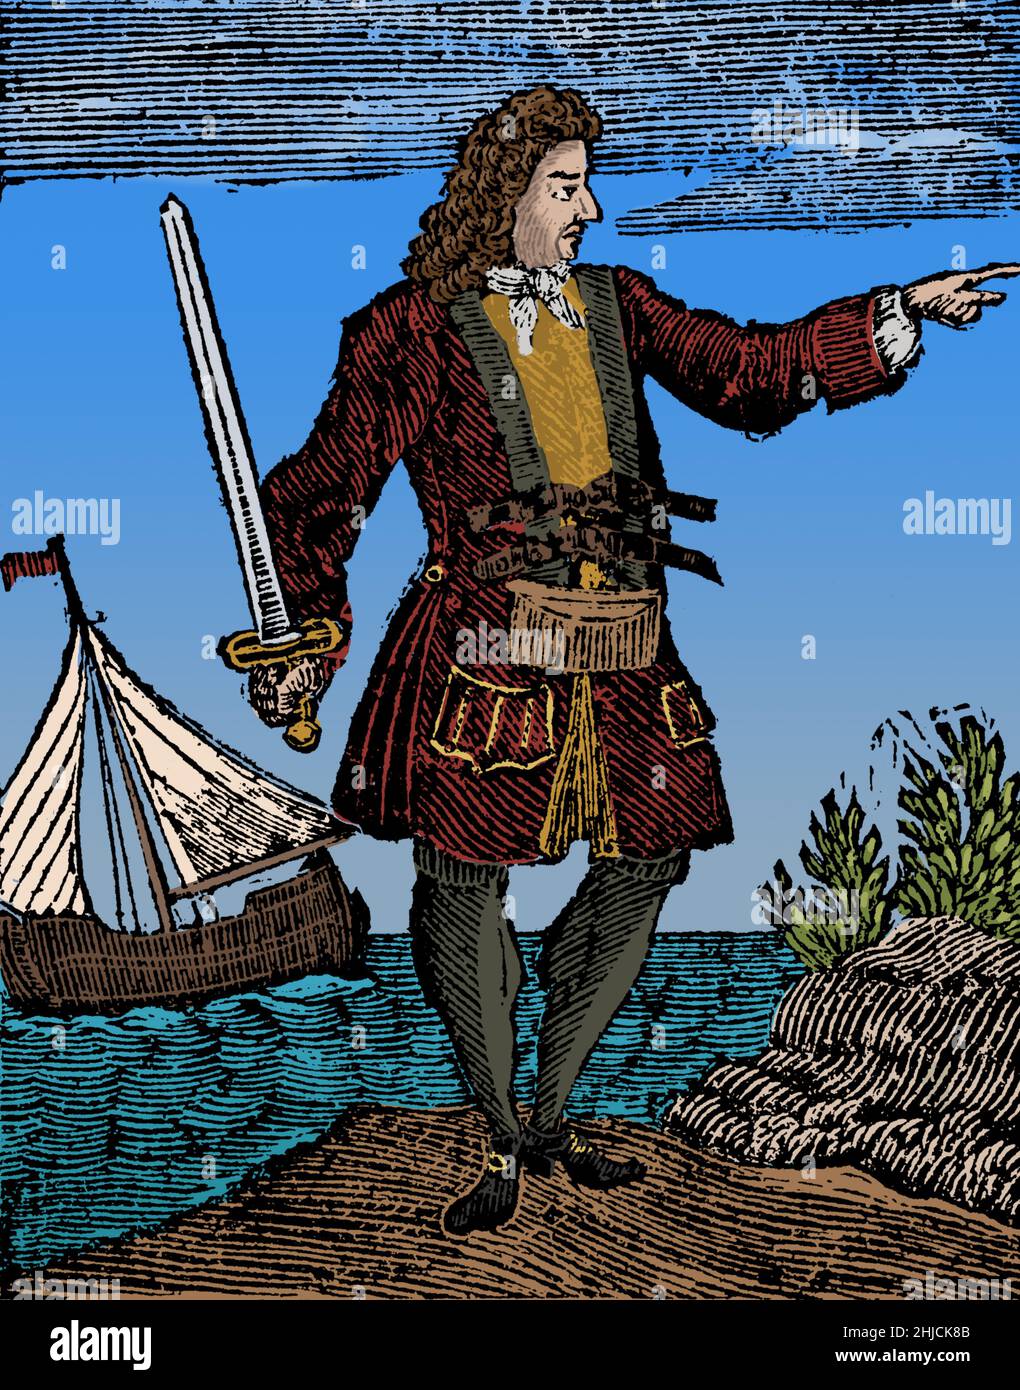 Charles Vane (1680 - 29. März 1721) war ein englischer Pirat, der von der berüchtigten Basis in New Providence auf den Bahamas aus operierte. Seine Fähigkeiten im Navigieren und im Schiffskampf waren unübertrefflich, und er plündert erfolgreich zahlreiche Schiffe. Während seiner Arbeit zwischen Kuba und Hispaniola beschuldigte ihn seine Mannschaft der Feigheit und er wurde mit einem kleinen Schleier und einigen loyalen Piraten zurückgelassen. Er eroberte mehrere Schiffe und baute seine Piratenflotte wieder auf, aber ein Hurrikan zerstörte die meisten von ihnen und fast seine gesamte Besatzung ertrank. Schließlich wurde er gefangen genommen, eingesperrt, vor Gericht gestellt, für schuldig befunden und gehängt. Eingefärbt. Stockfoto